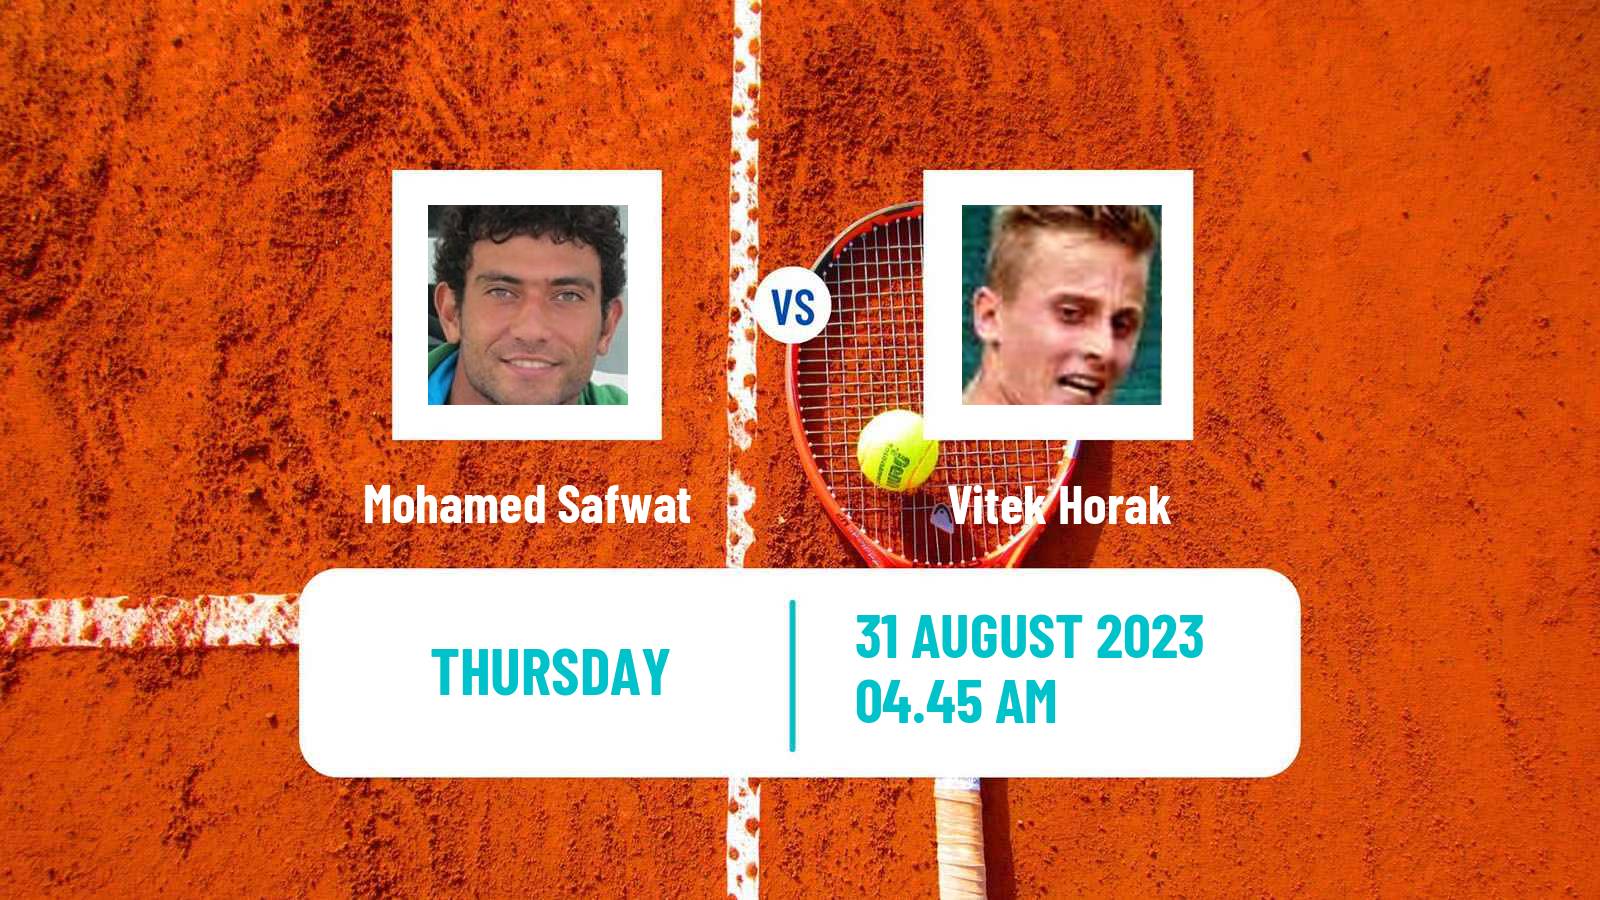 Tennis ITF M25 Jablonec Nad Nisou 2 Men Mohamed Safwat - Vitek Horak